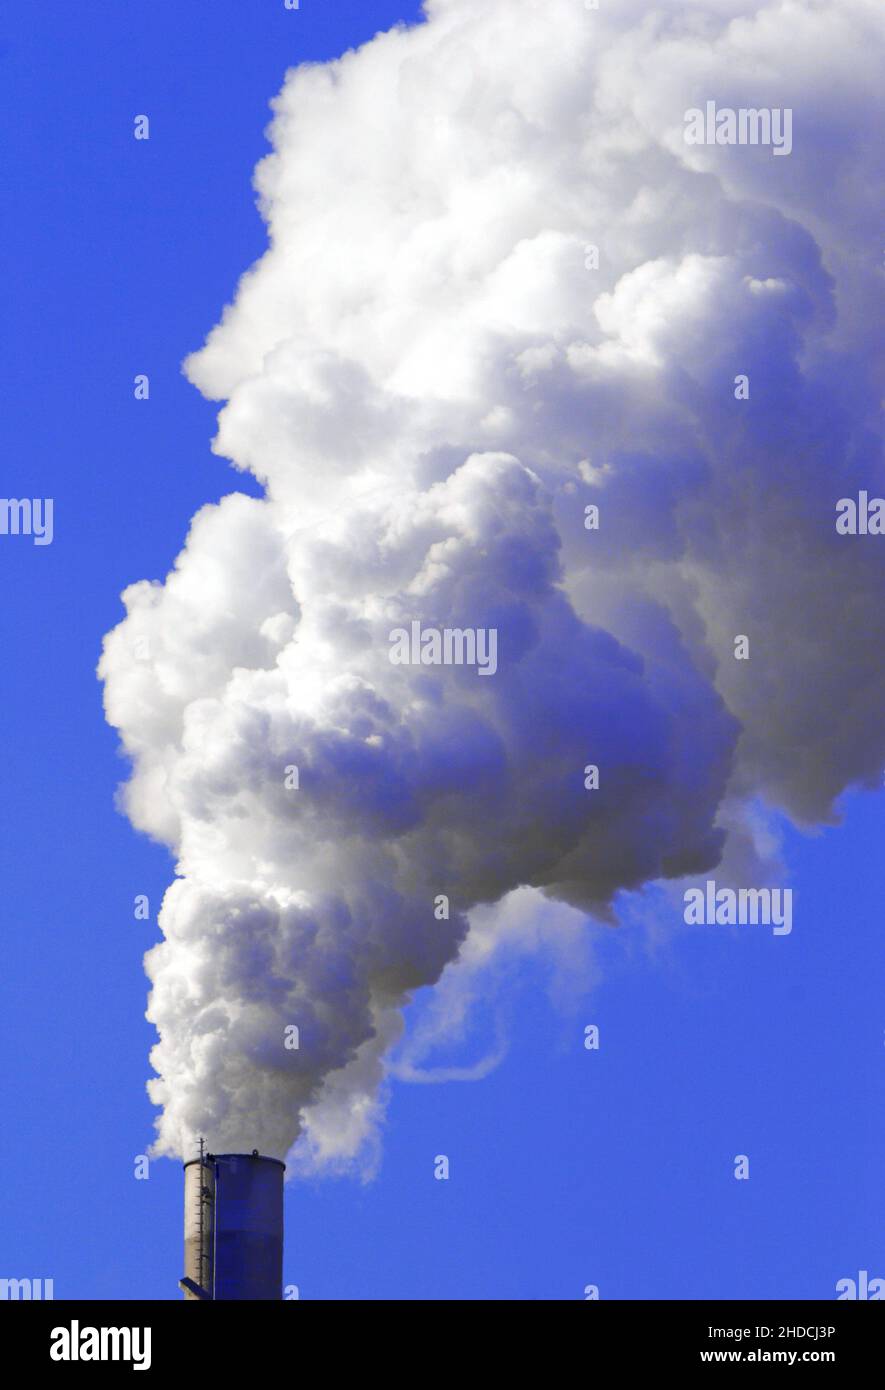 Rauchender Schlot, Kraftwerk, Schornstein, Schadstoffausstoss, Umweltverschmutzung, Stock Photo